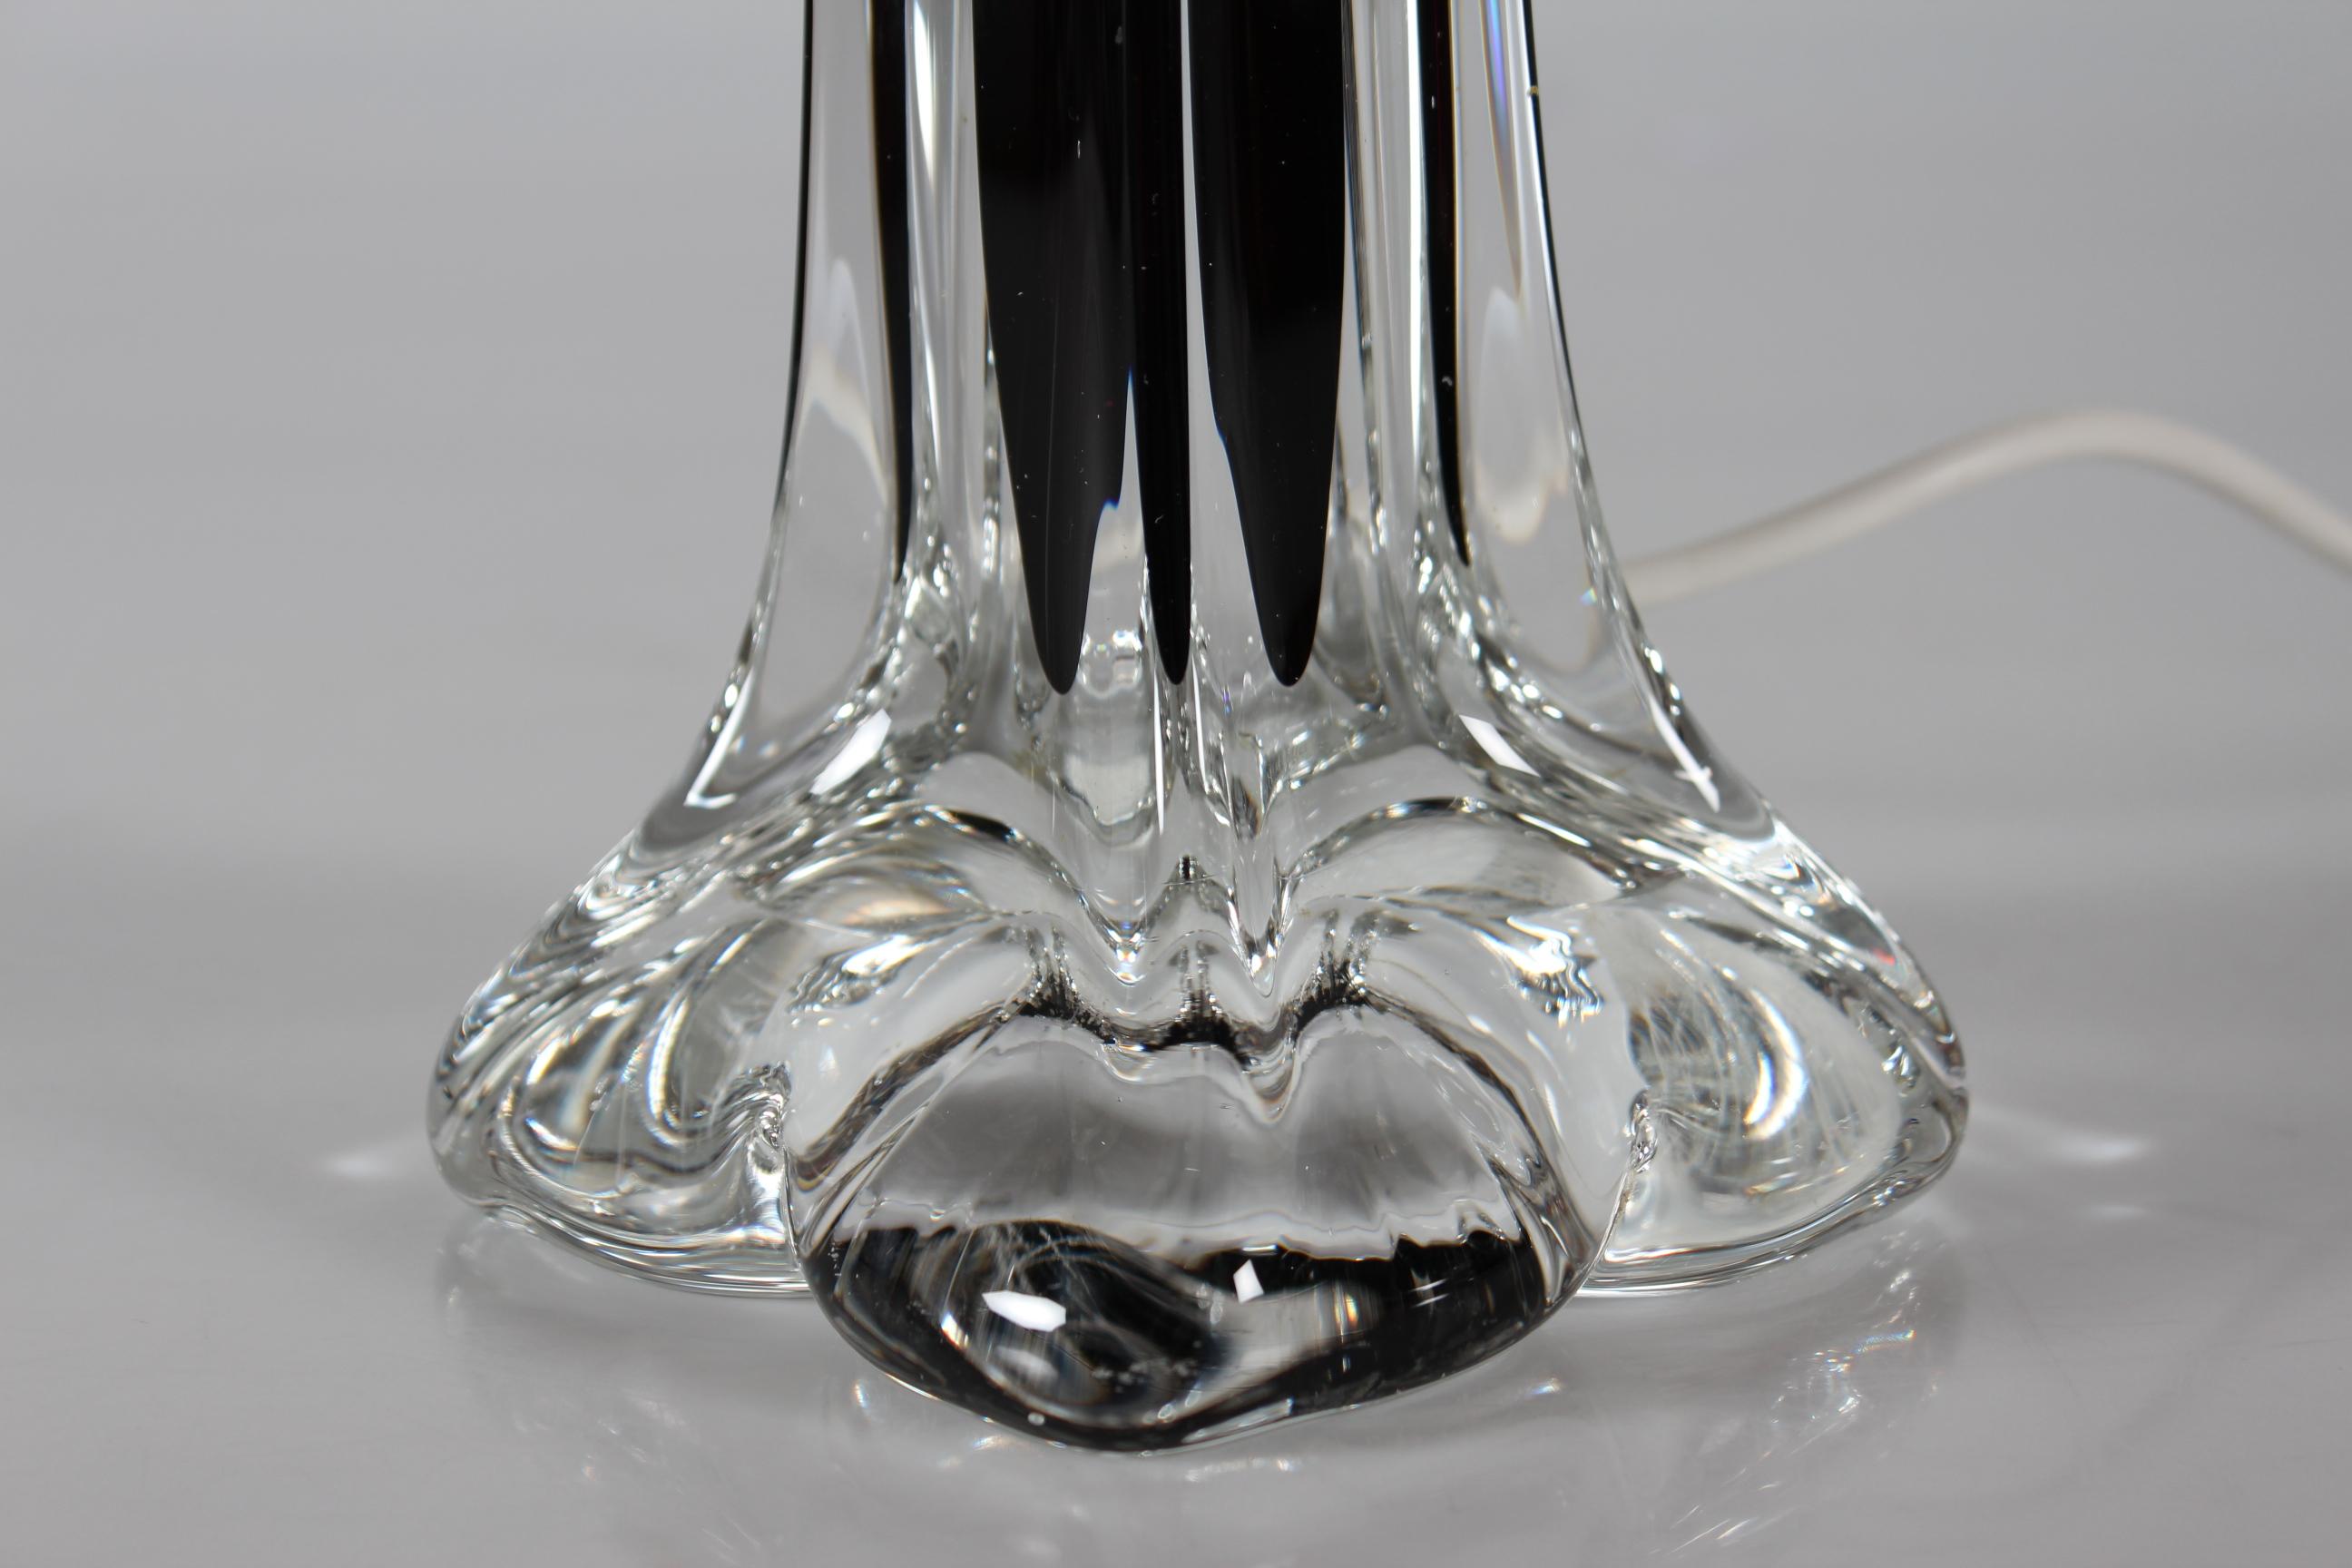 Lampe de table Paul Kedelv réalisée par Flygfors dans les années 1960. 

La base artistique de la lampe, haute et élancée, est faite de cristal clair avec un noyau de couleur marron/aubergine foncé.

Vous trouverez également un nouvel abat-jour